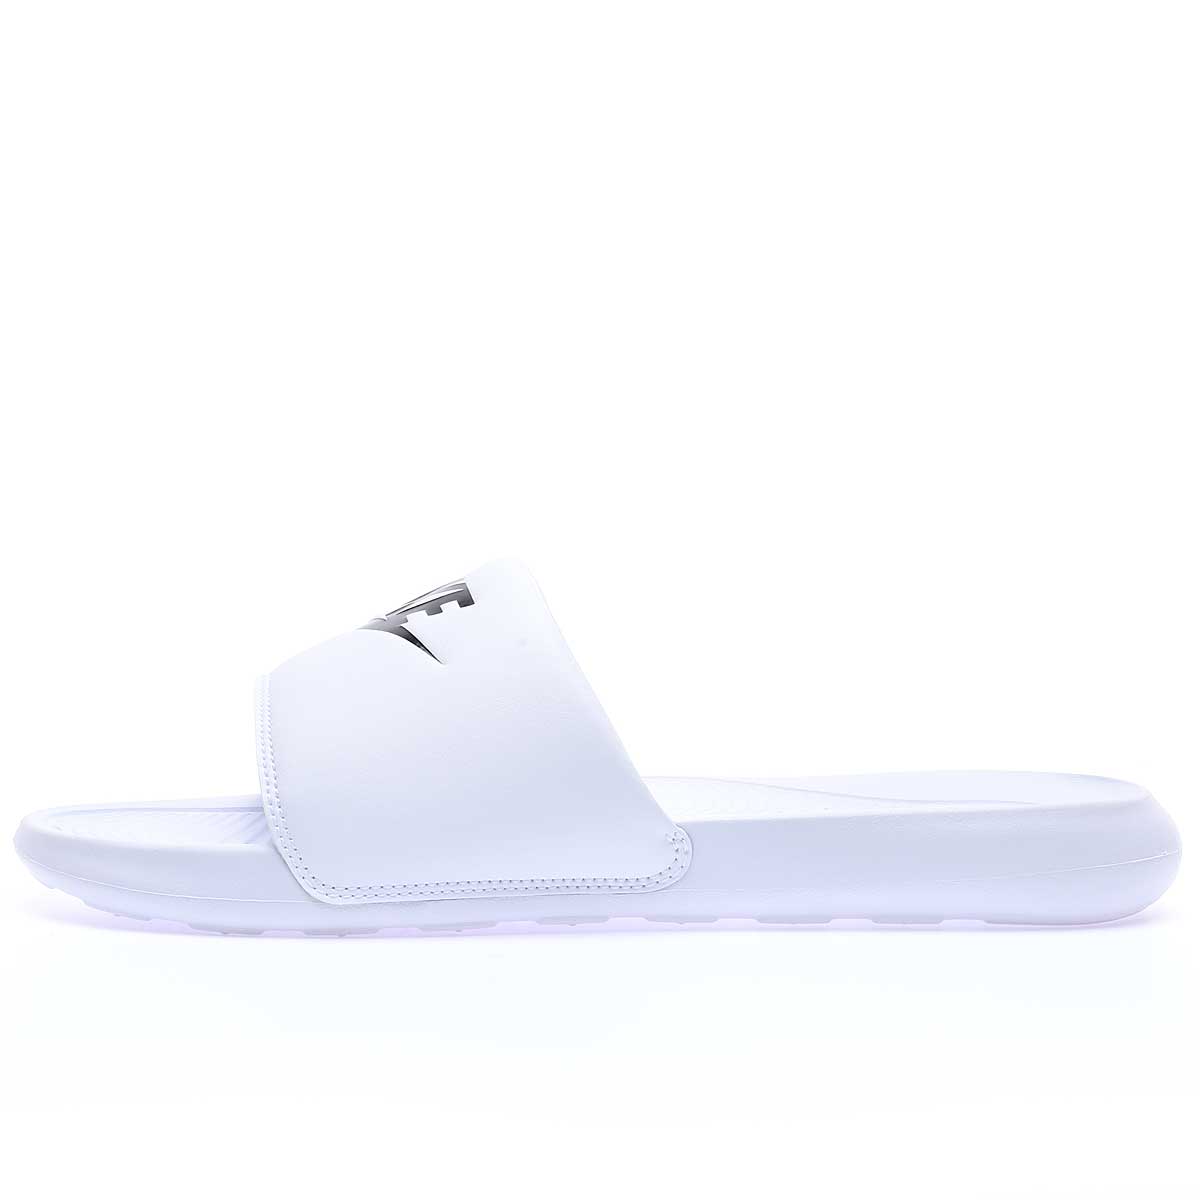 Nike Victori One Slide, Weiß/schwarz-weiß EU49 1/2